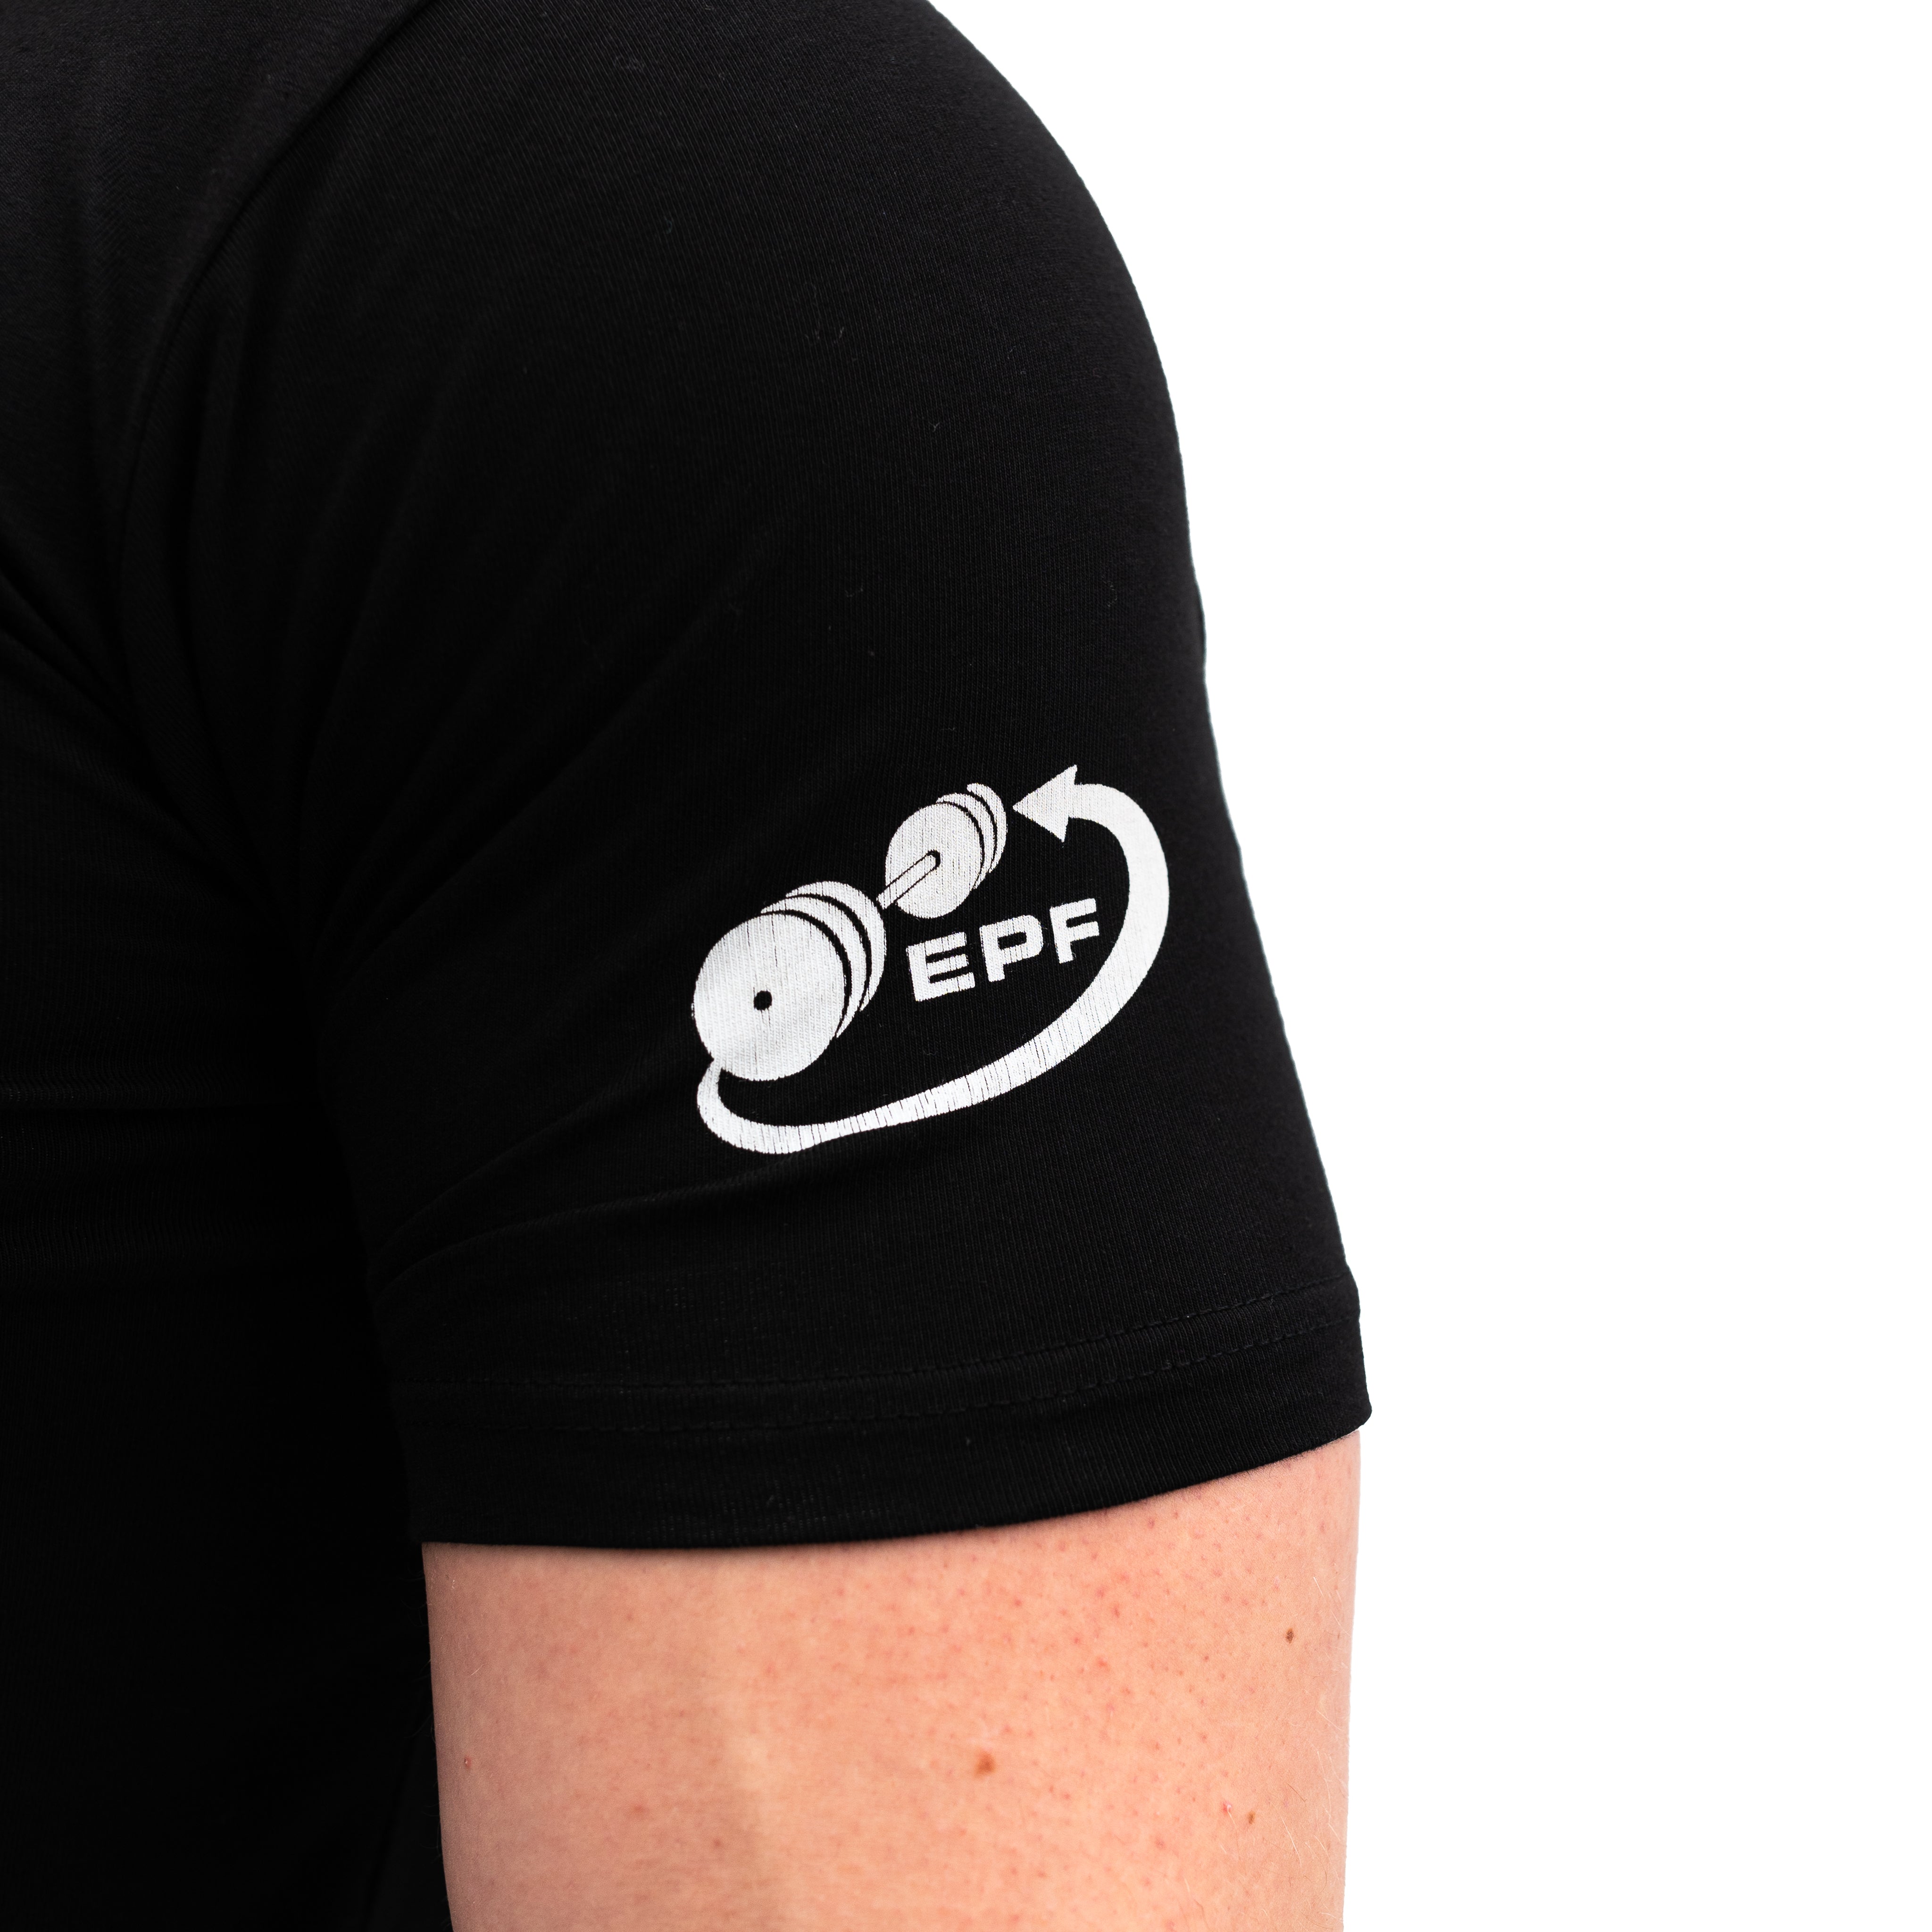 EPF European University Cup, Luxembourg Bar Grip Men's Shirt